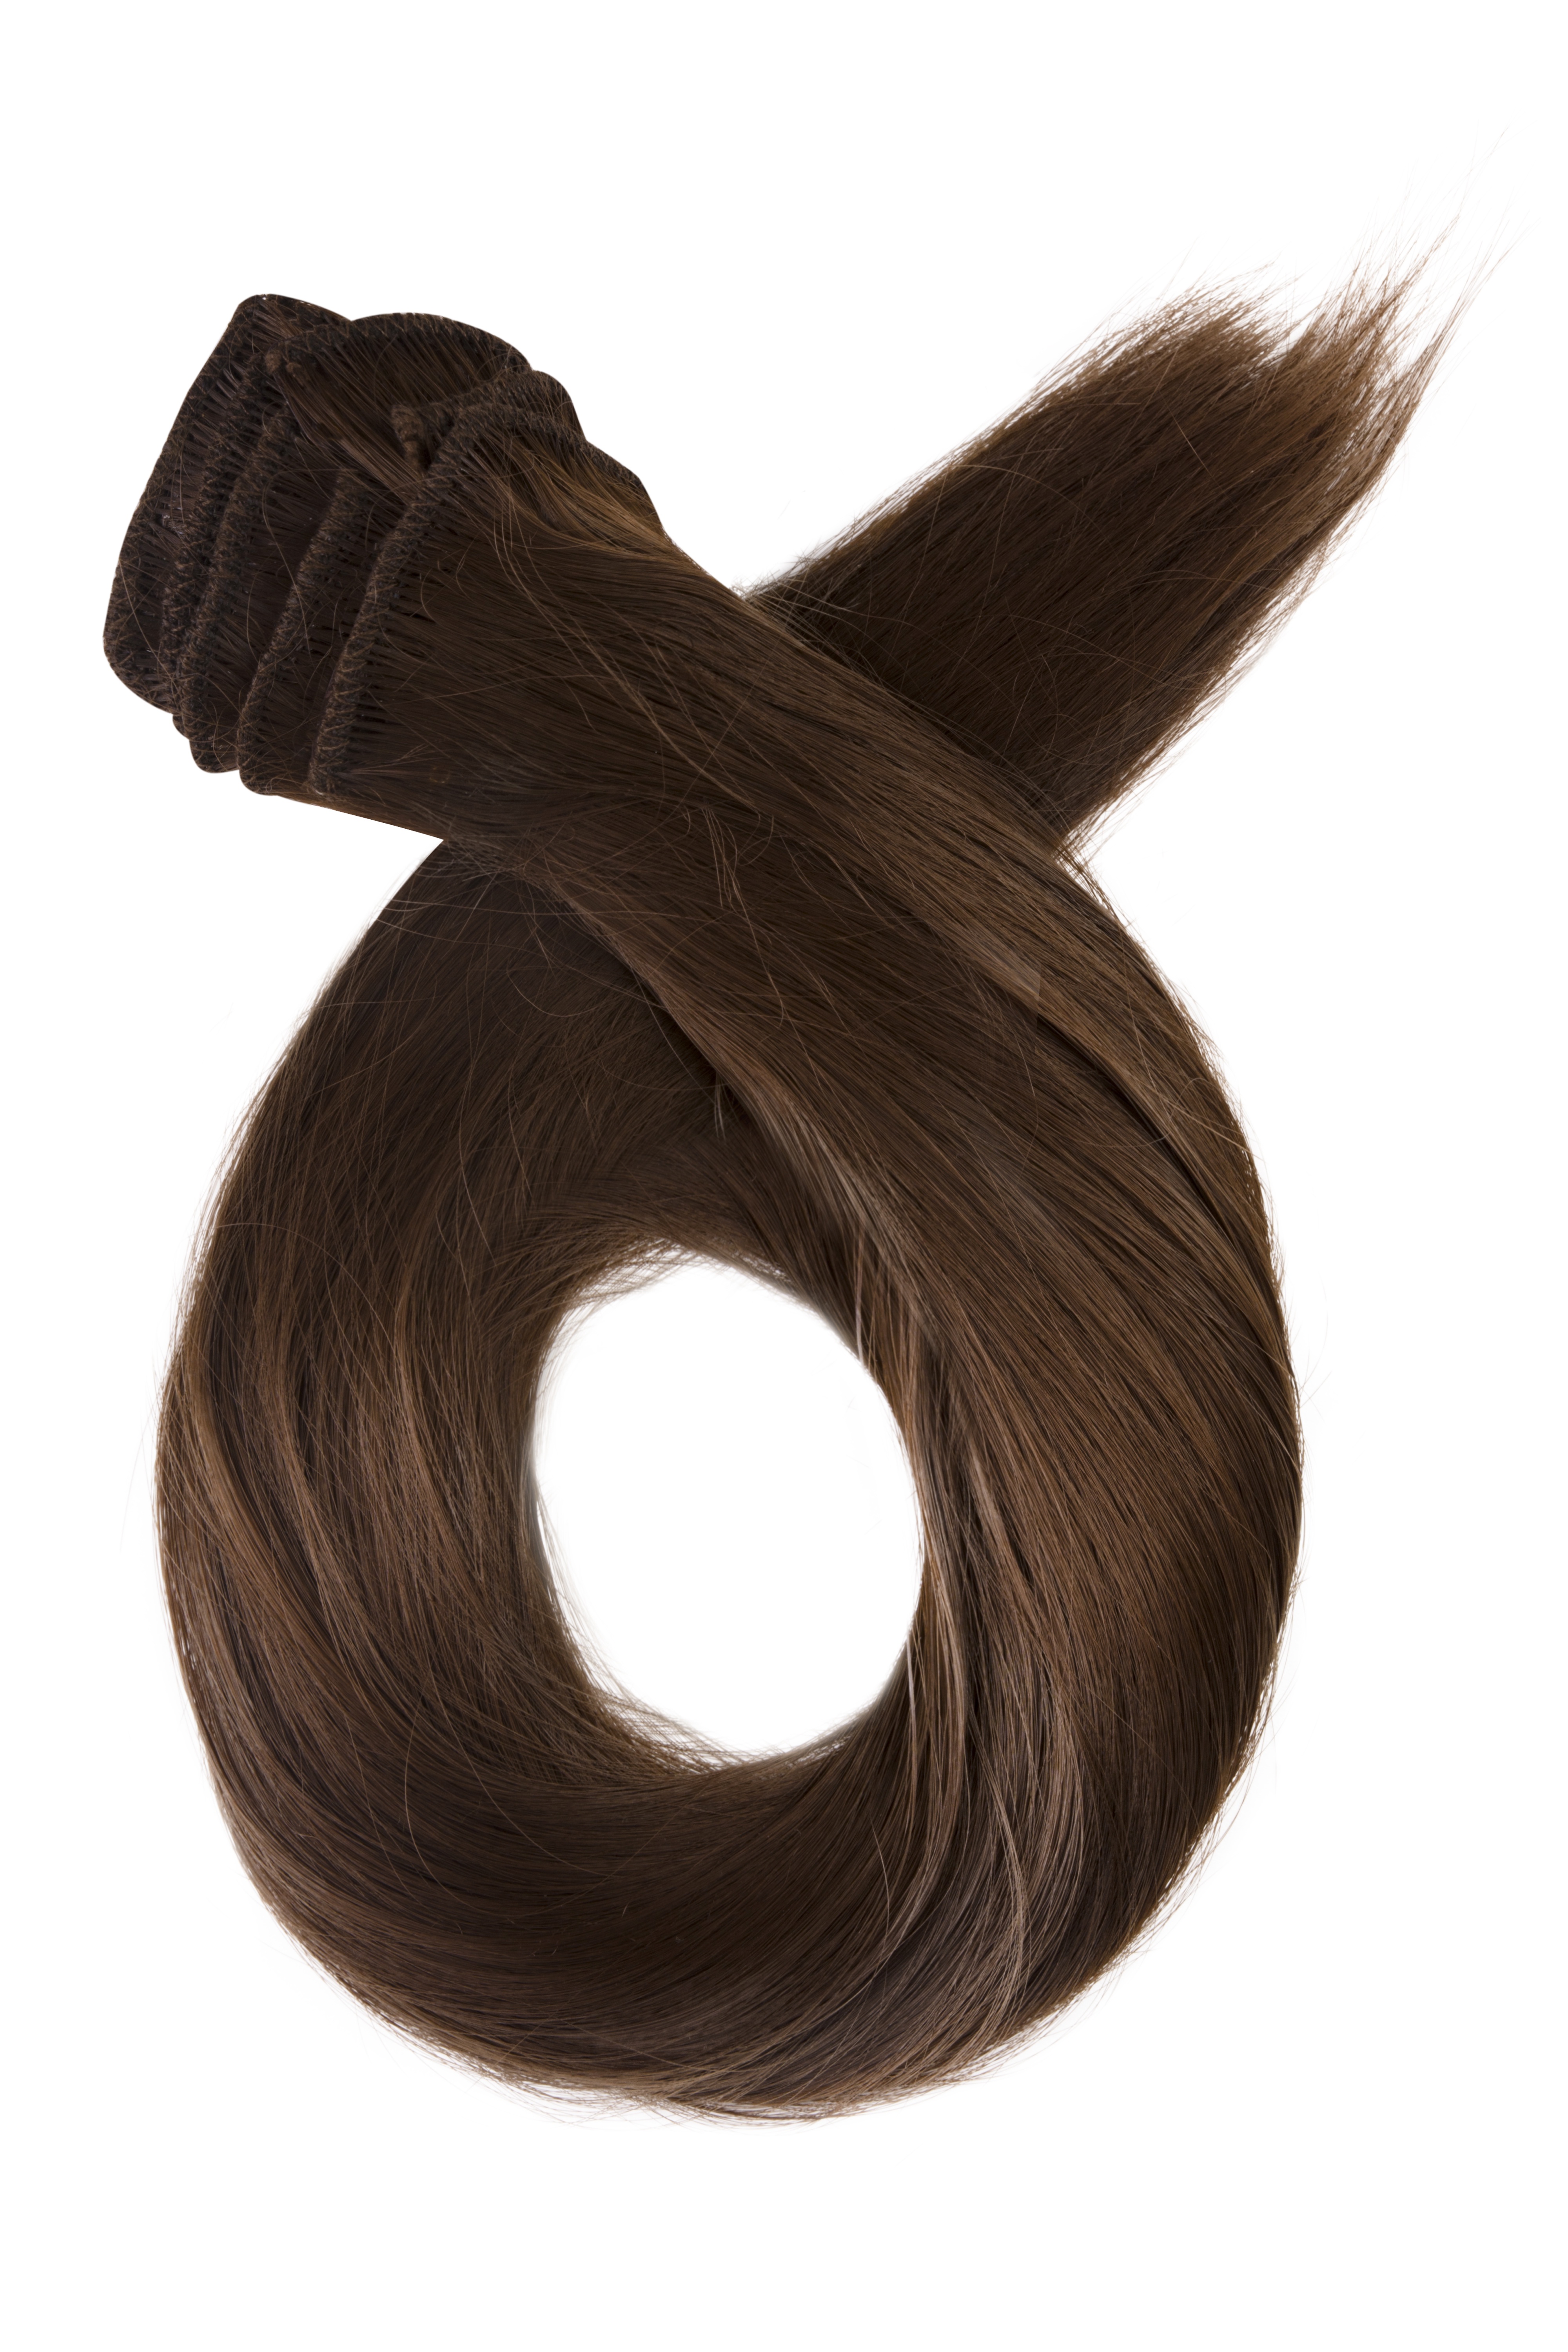 Prírodne hnedé clip in vlasy, 60cm, 180g, farba 8